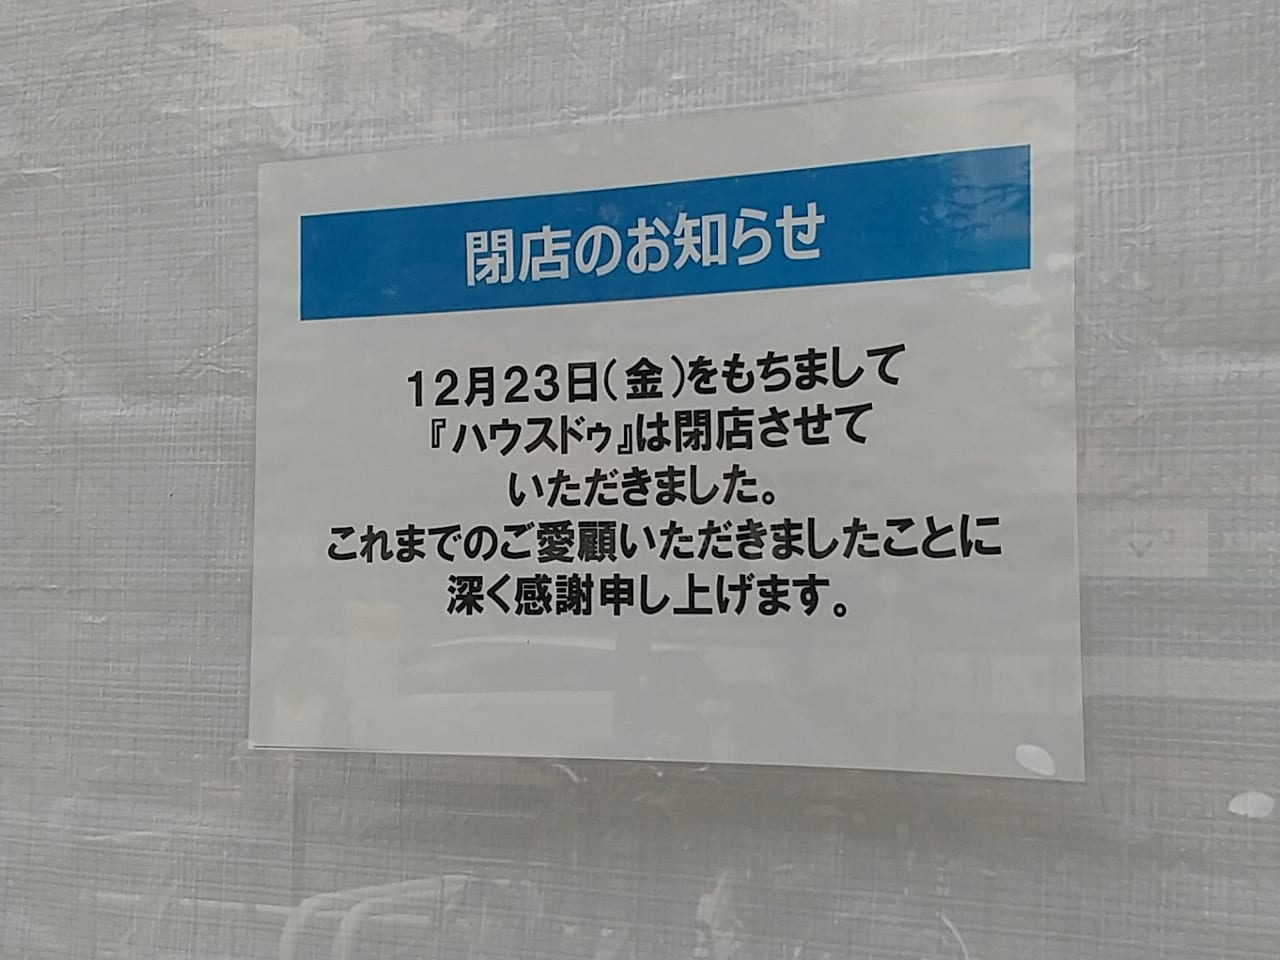 ゆめタウン東広島「ハウスドゥ」が閉店していました。